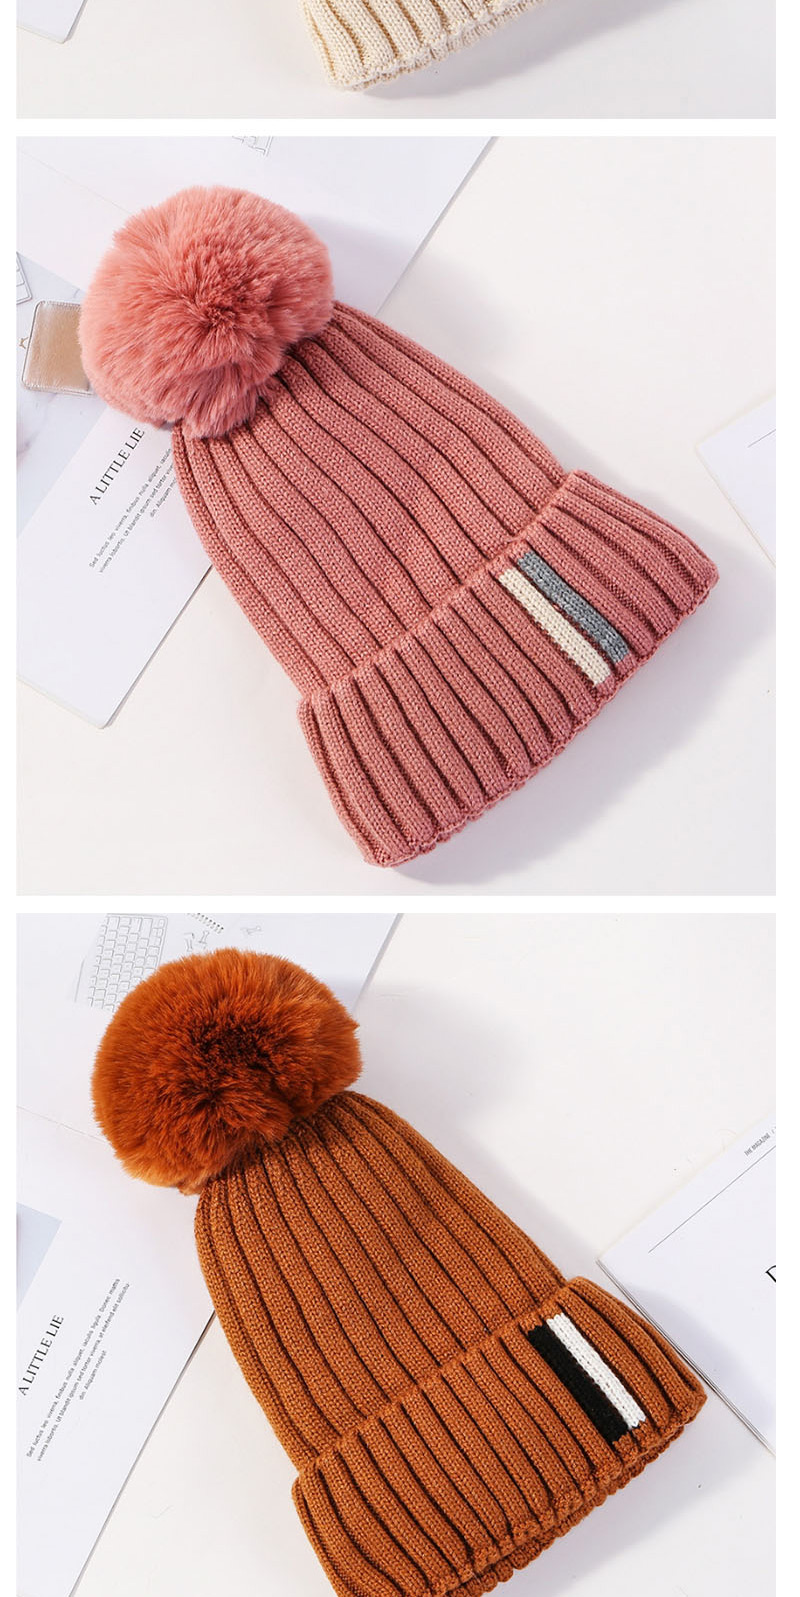 Fashion Beige Contrast Striped Knit Wool Hat,Knitting Wool Hats